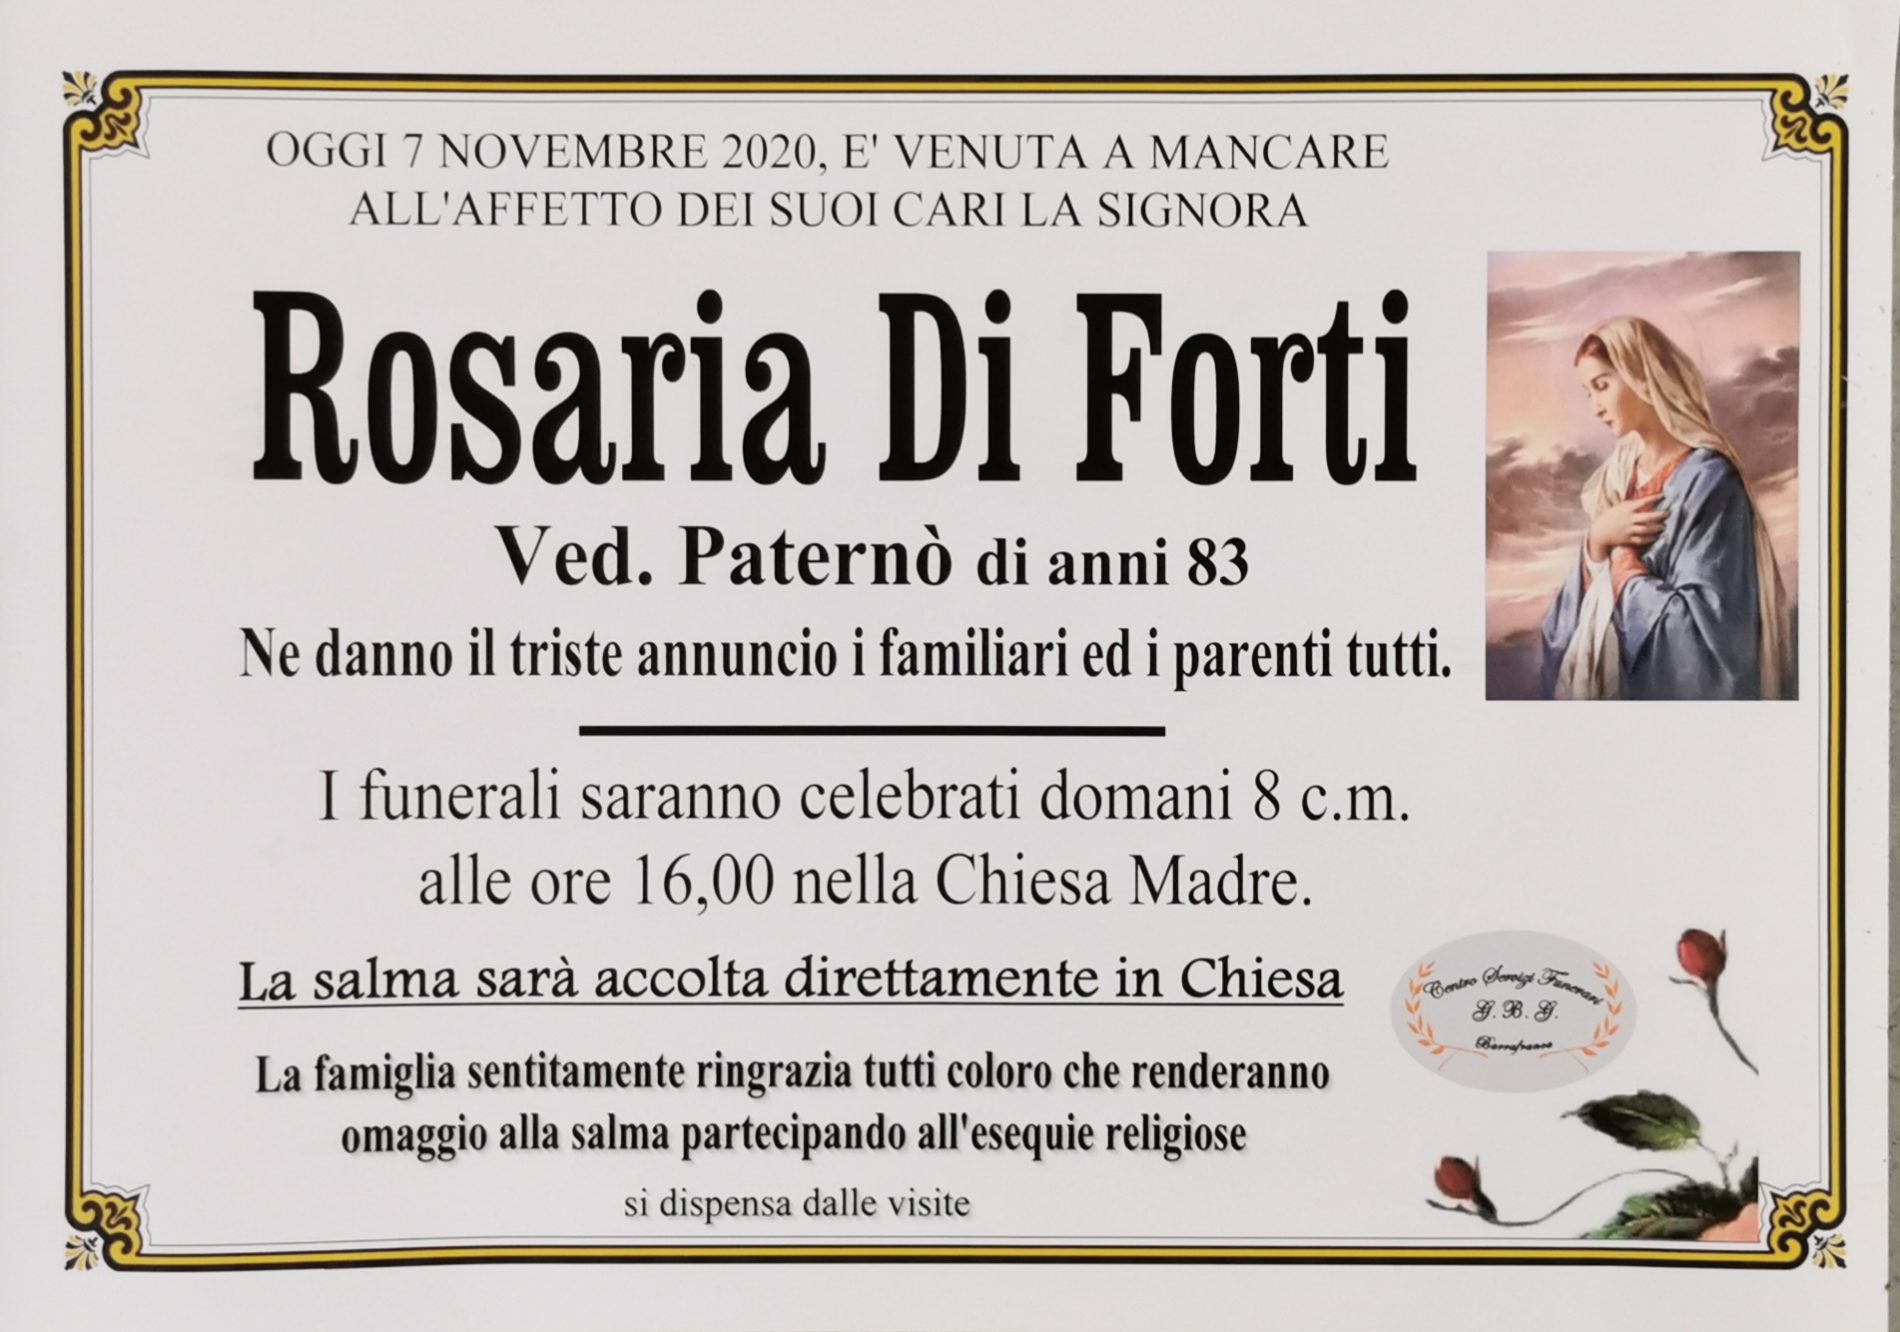 Annuncio servizi funerari agenzia G.B.G. sig.ra Rosaria Di Forti ved. Paternò